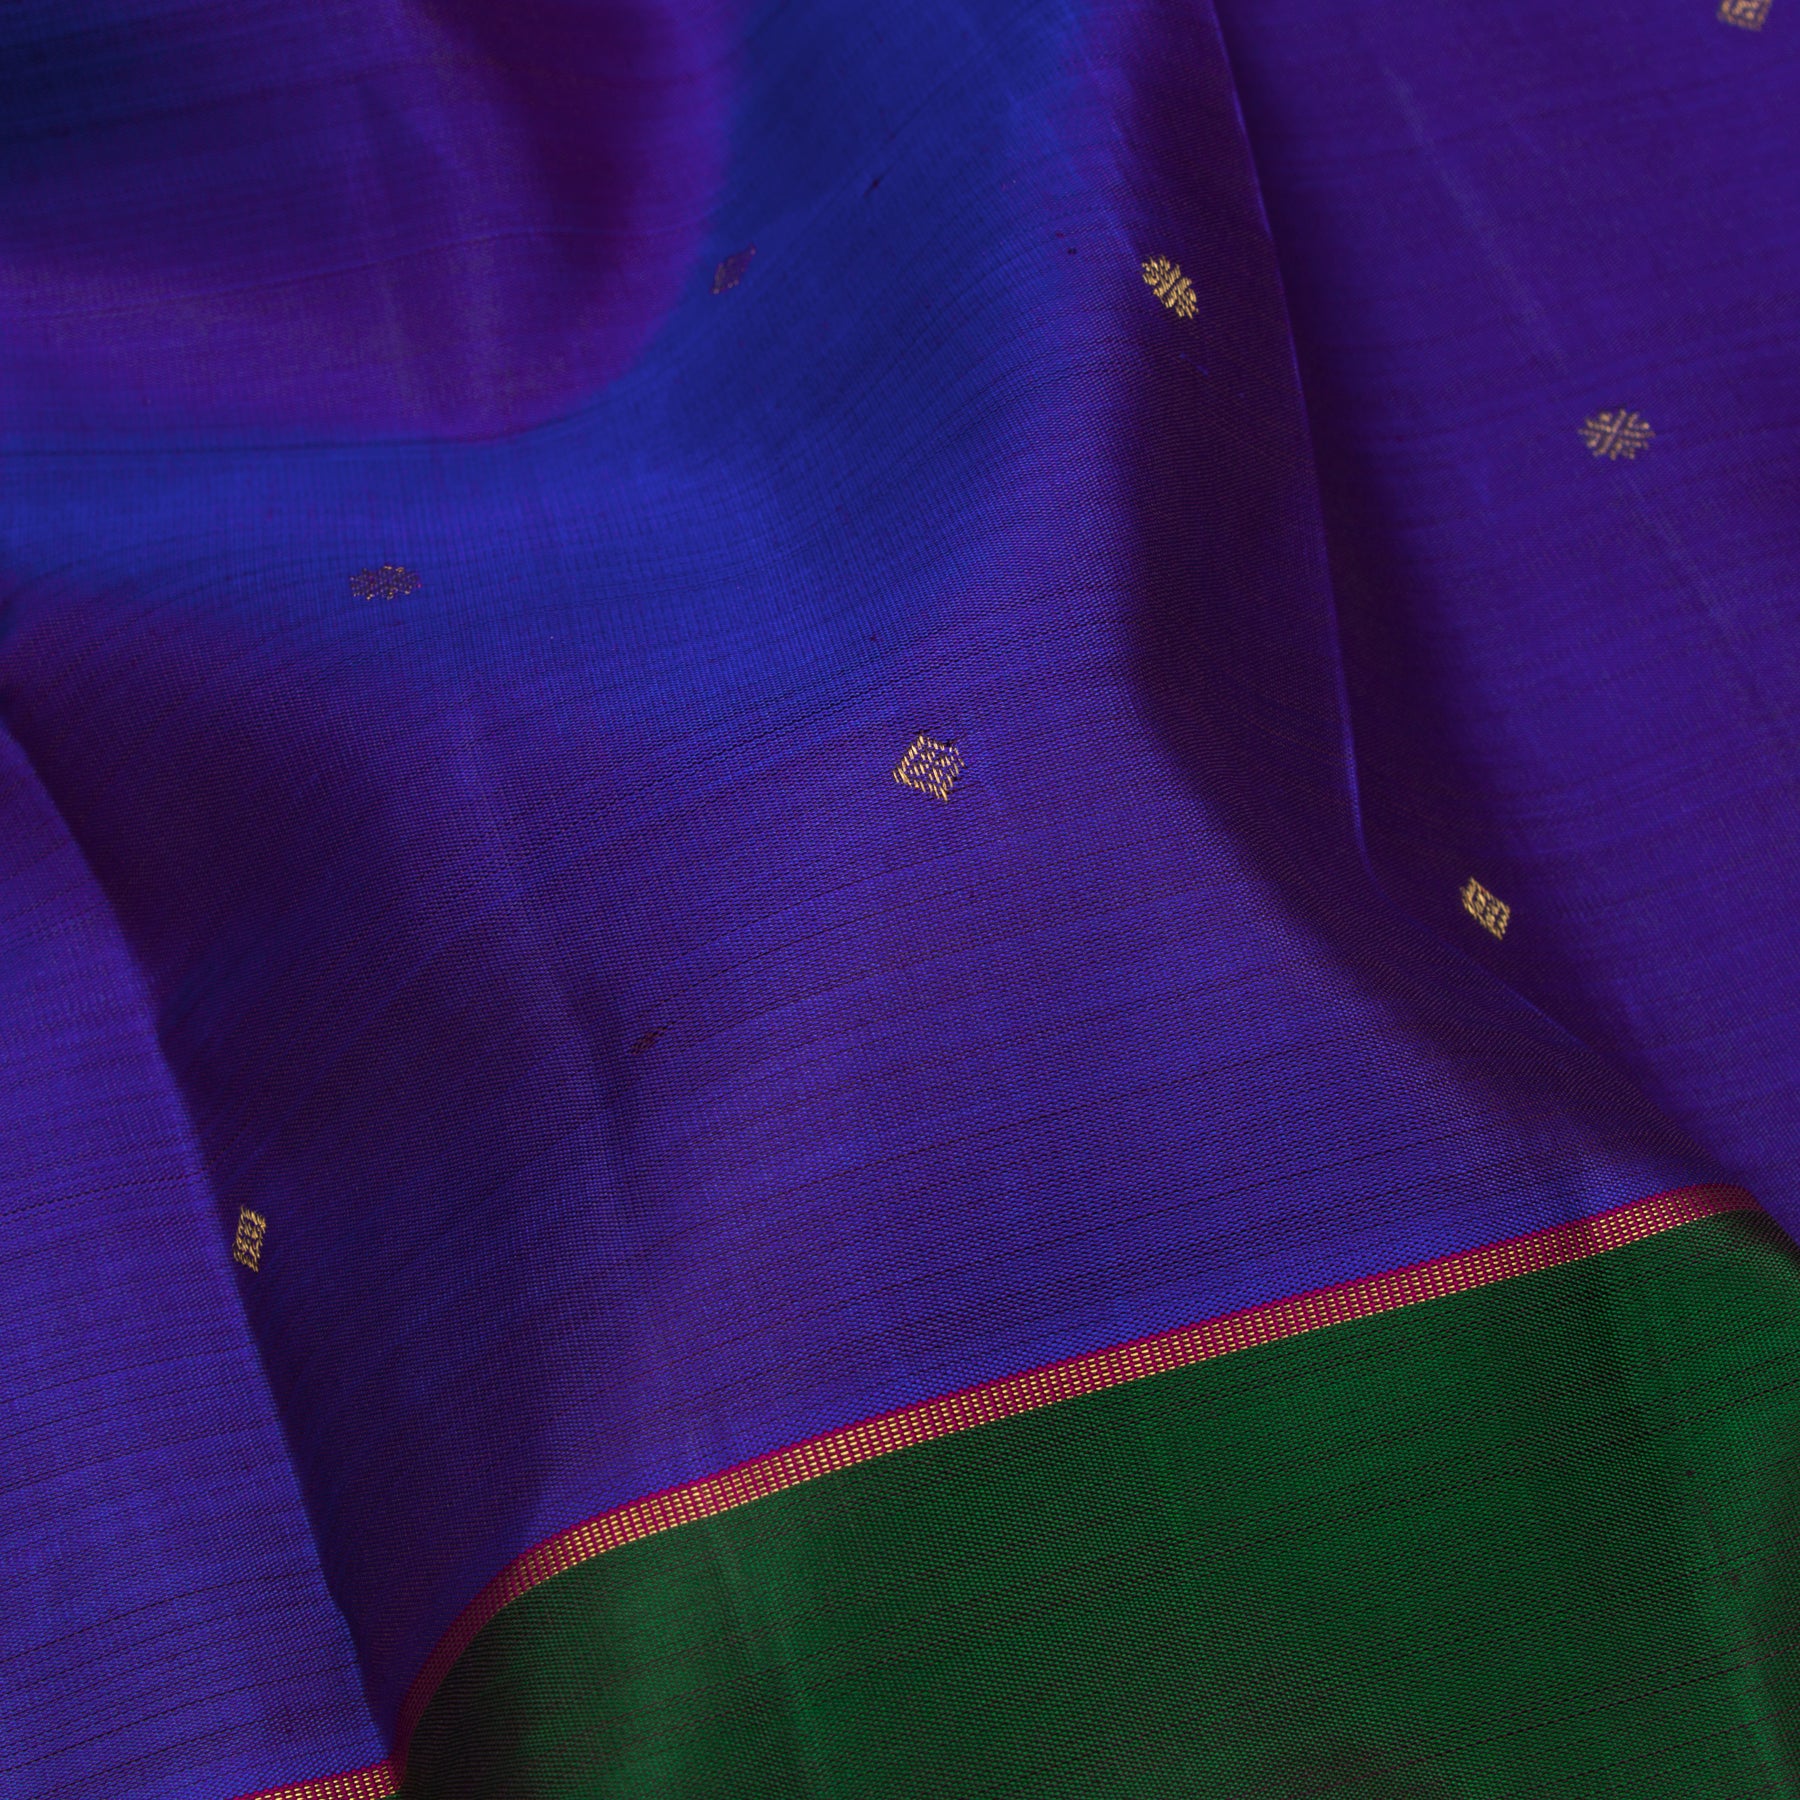 Kanakavalli Kanjivaram Silk Sari 23-599-HS001-08173 - Fabric View